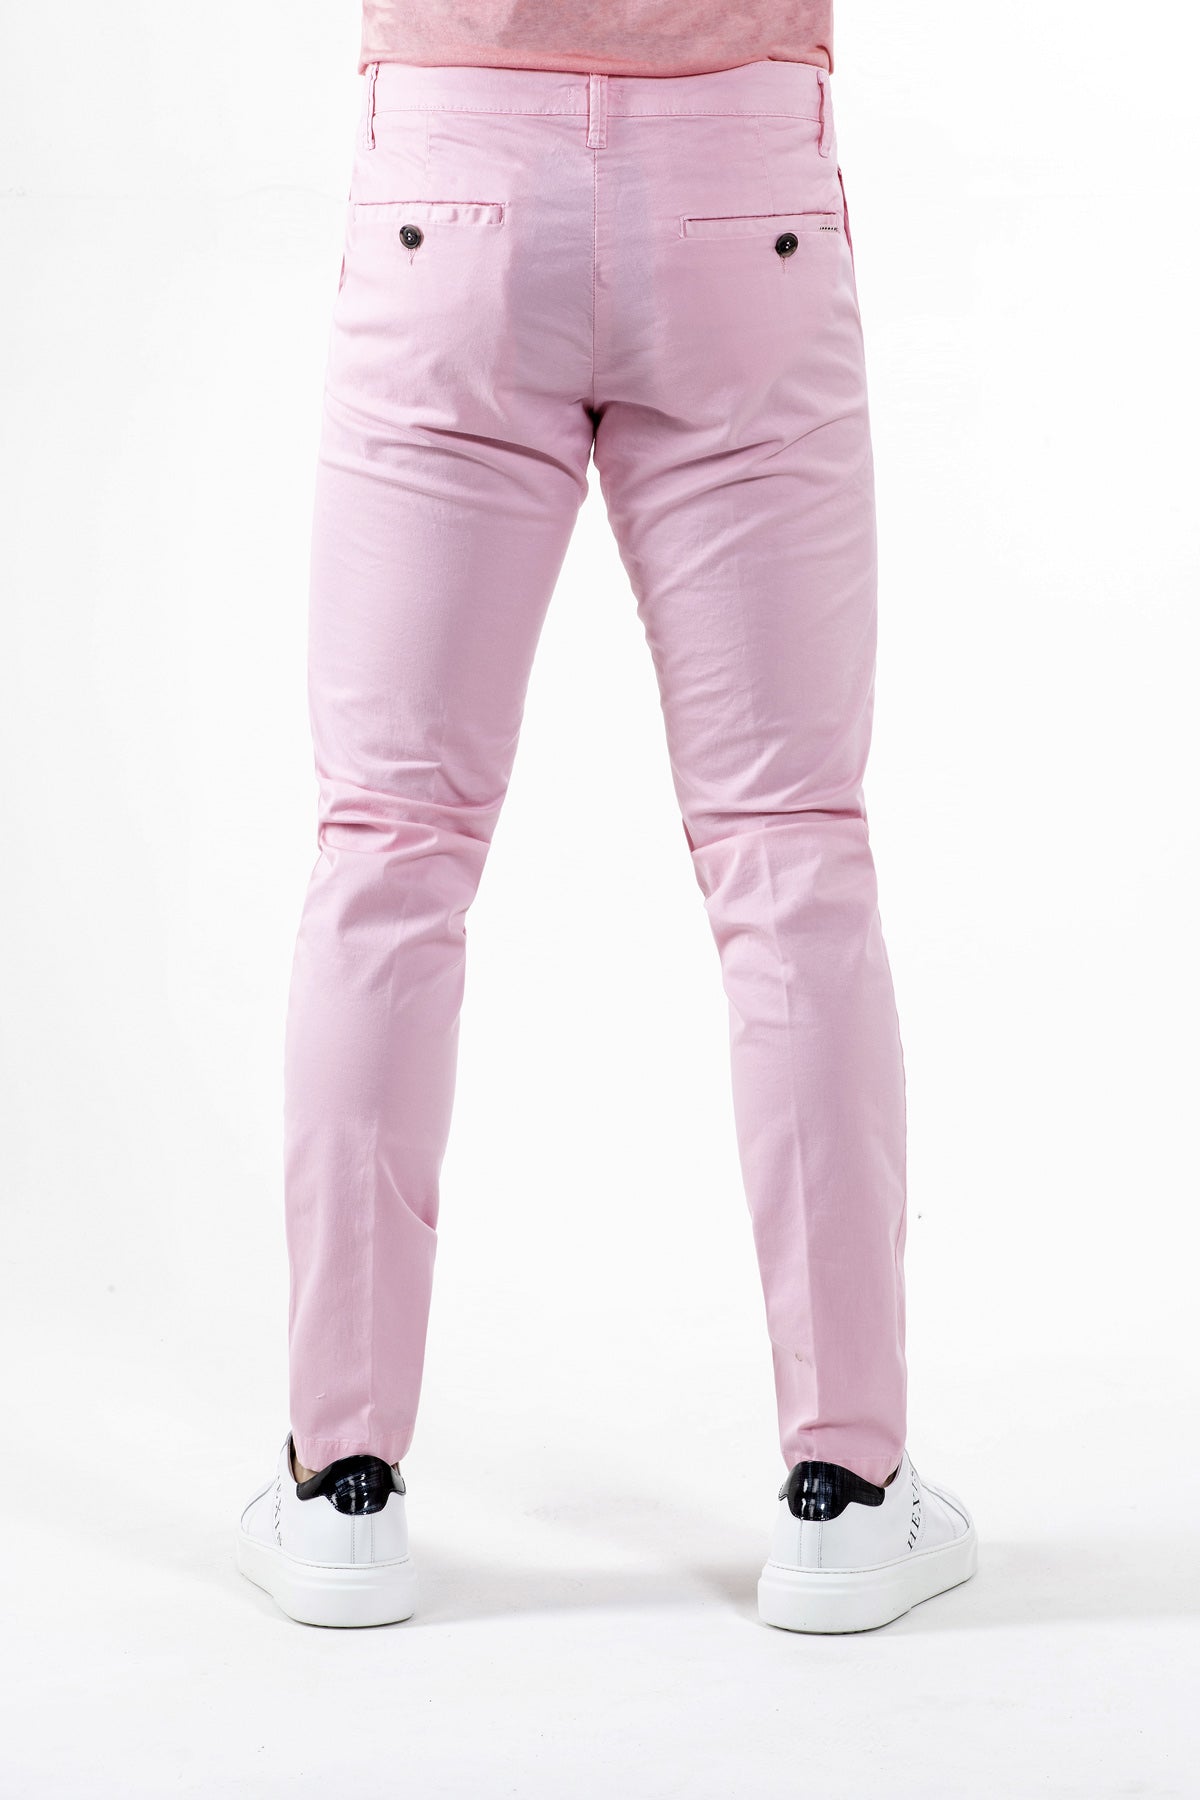 Pantalone Chino Brixton in cotone stretch Rosa